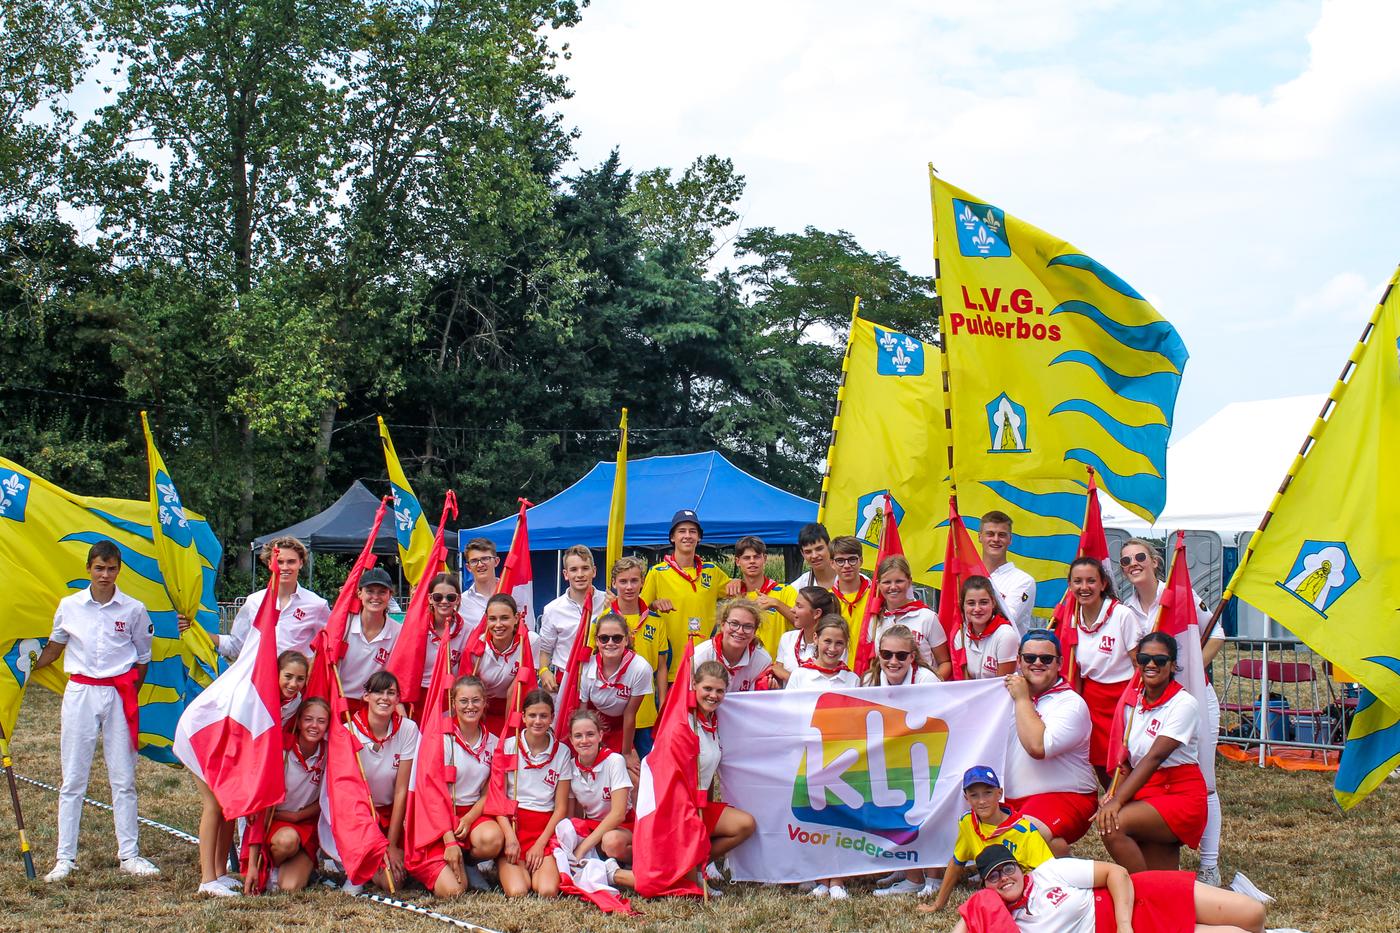 KLJ Pulderbos op het Interregionaal Sportfeest van Oostmalle met de KLJ voor Iedereen-vlag